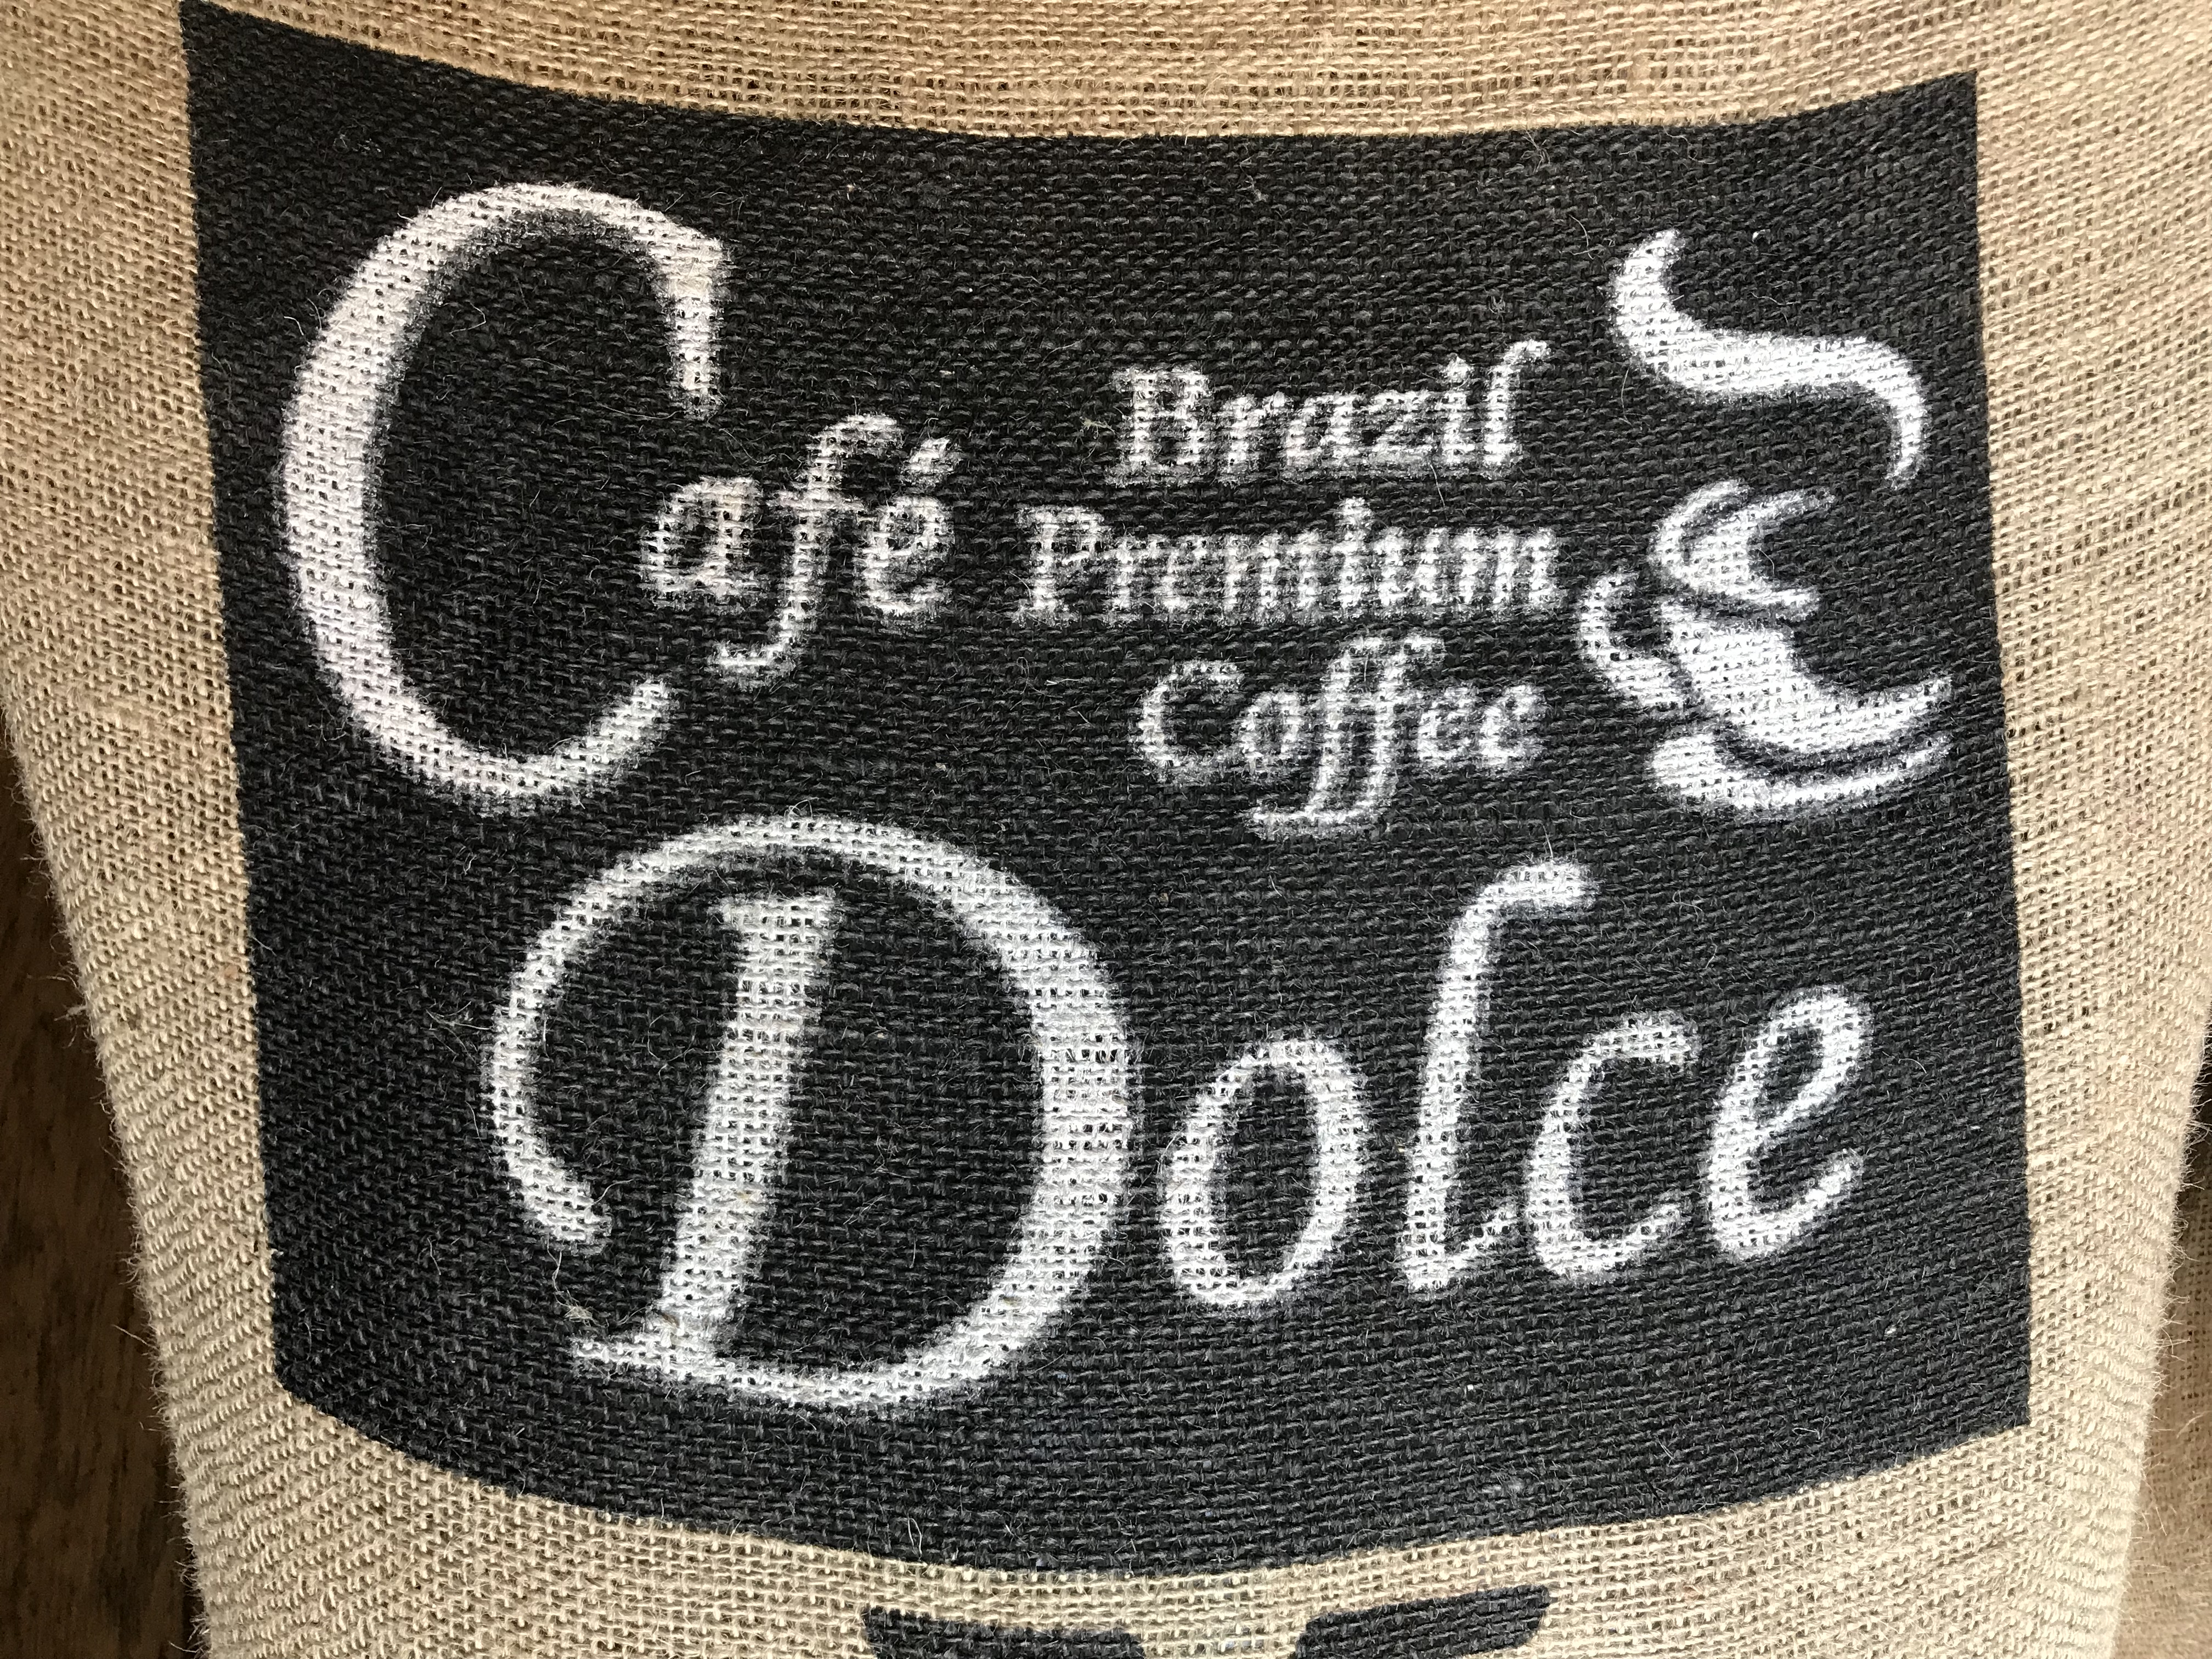 カフェ ドルチェ プレミアム Cafe Dolce Premium(200g)